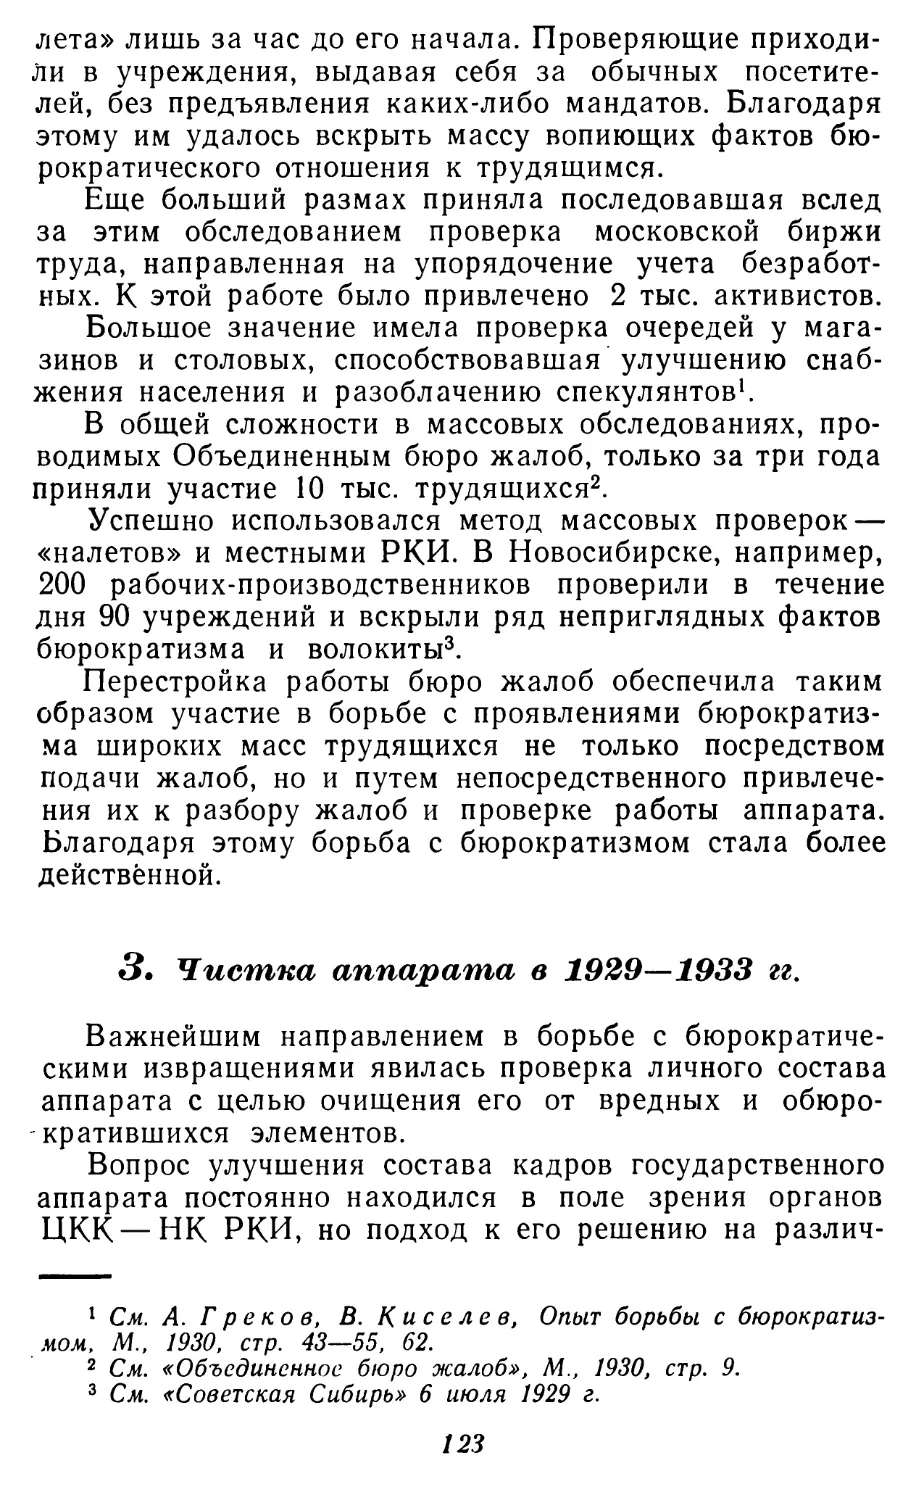 3. Чистка аппарата в 1929-1933 гг.